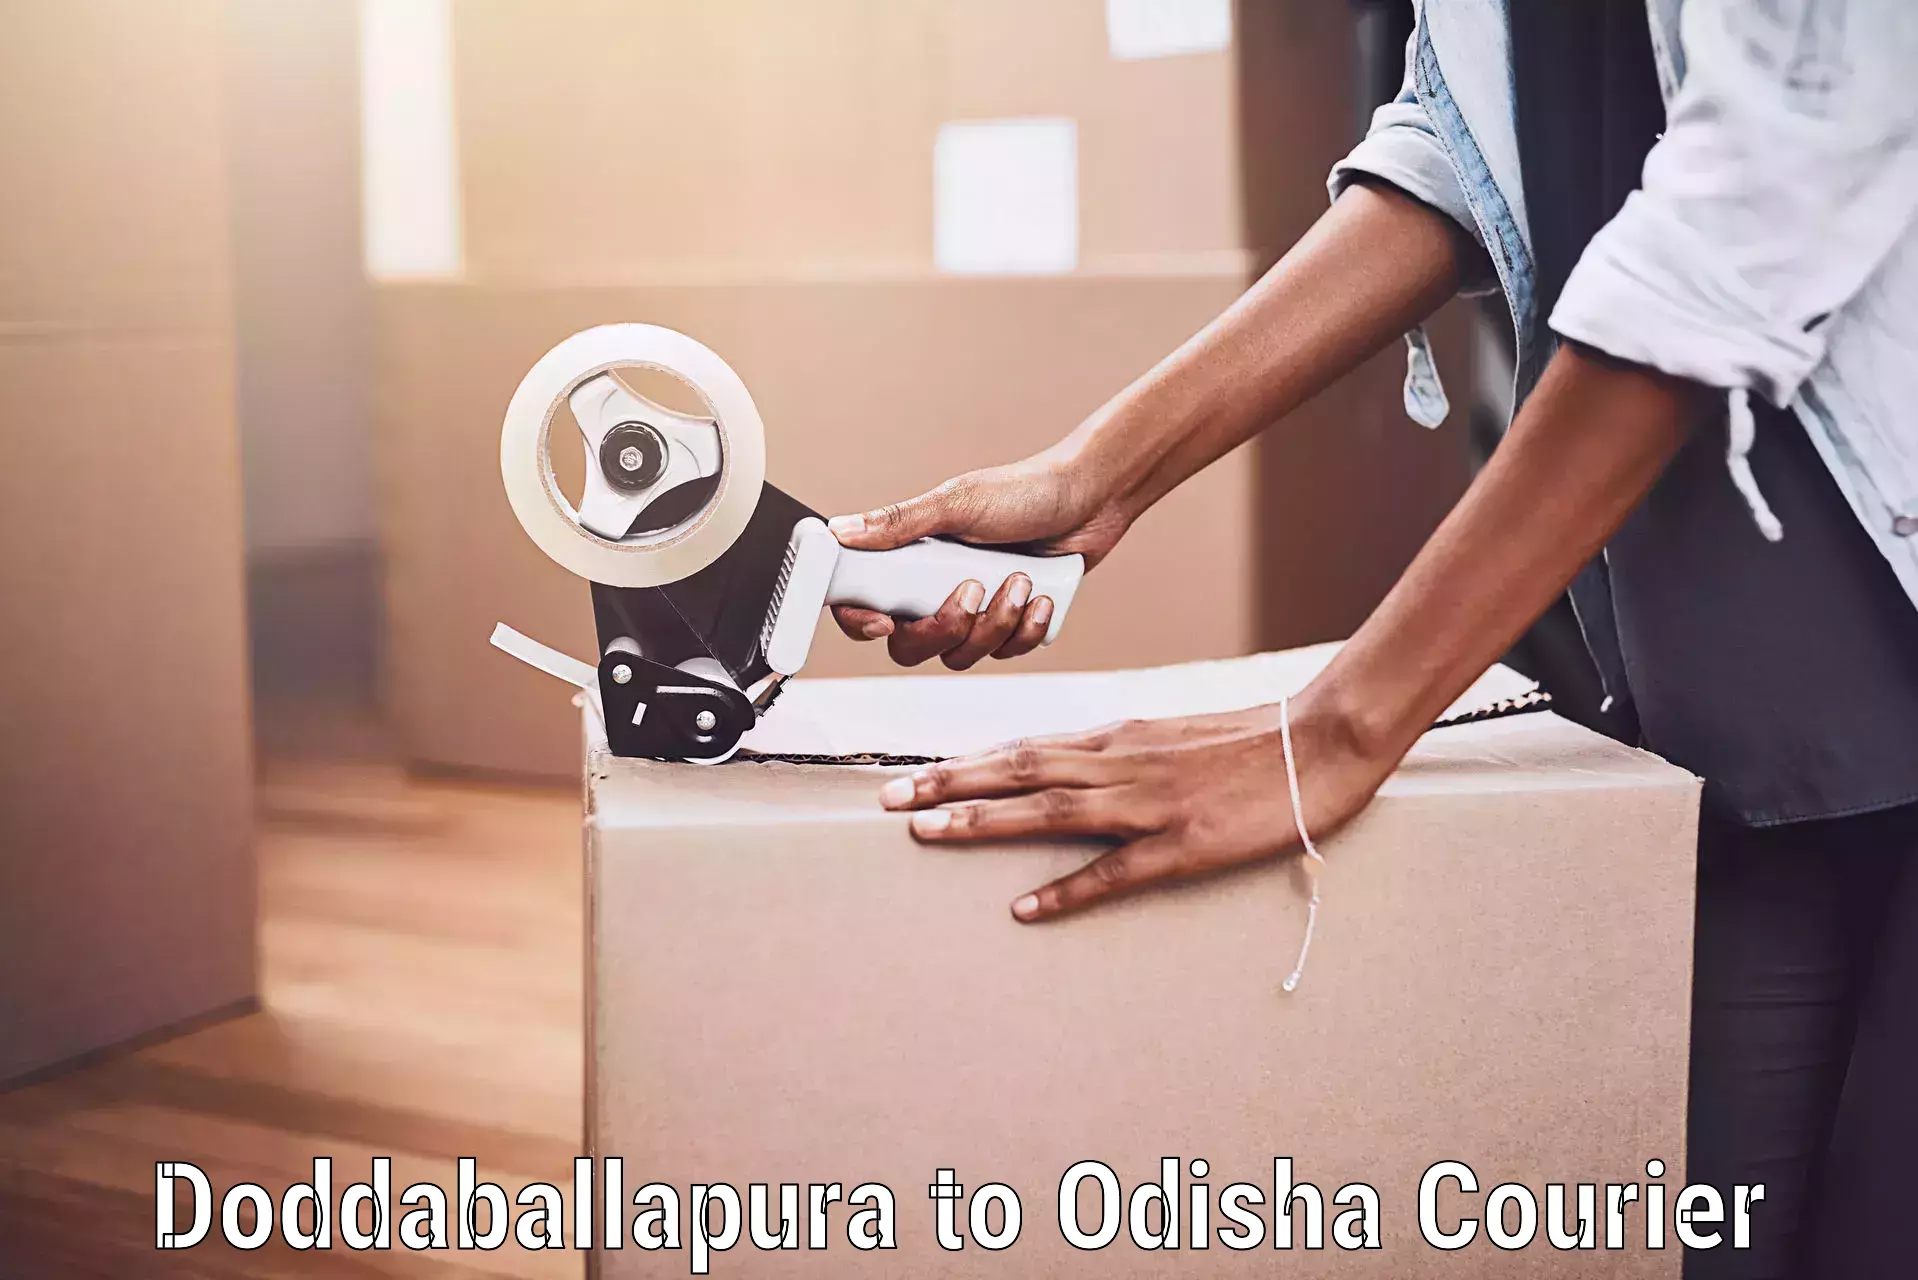 Luggage delivery rates Doddaballapura to Odisha